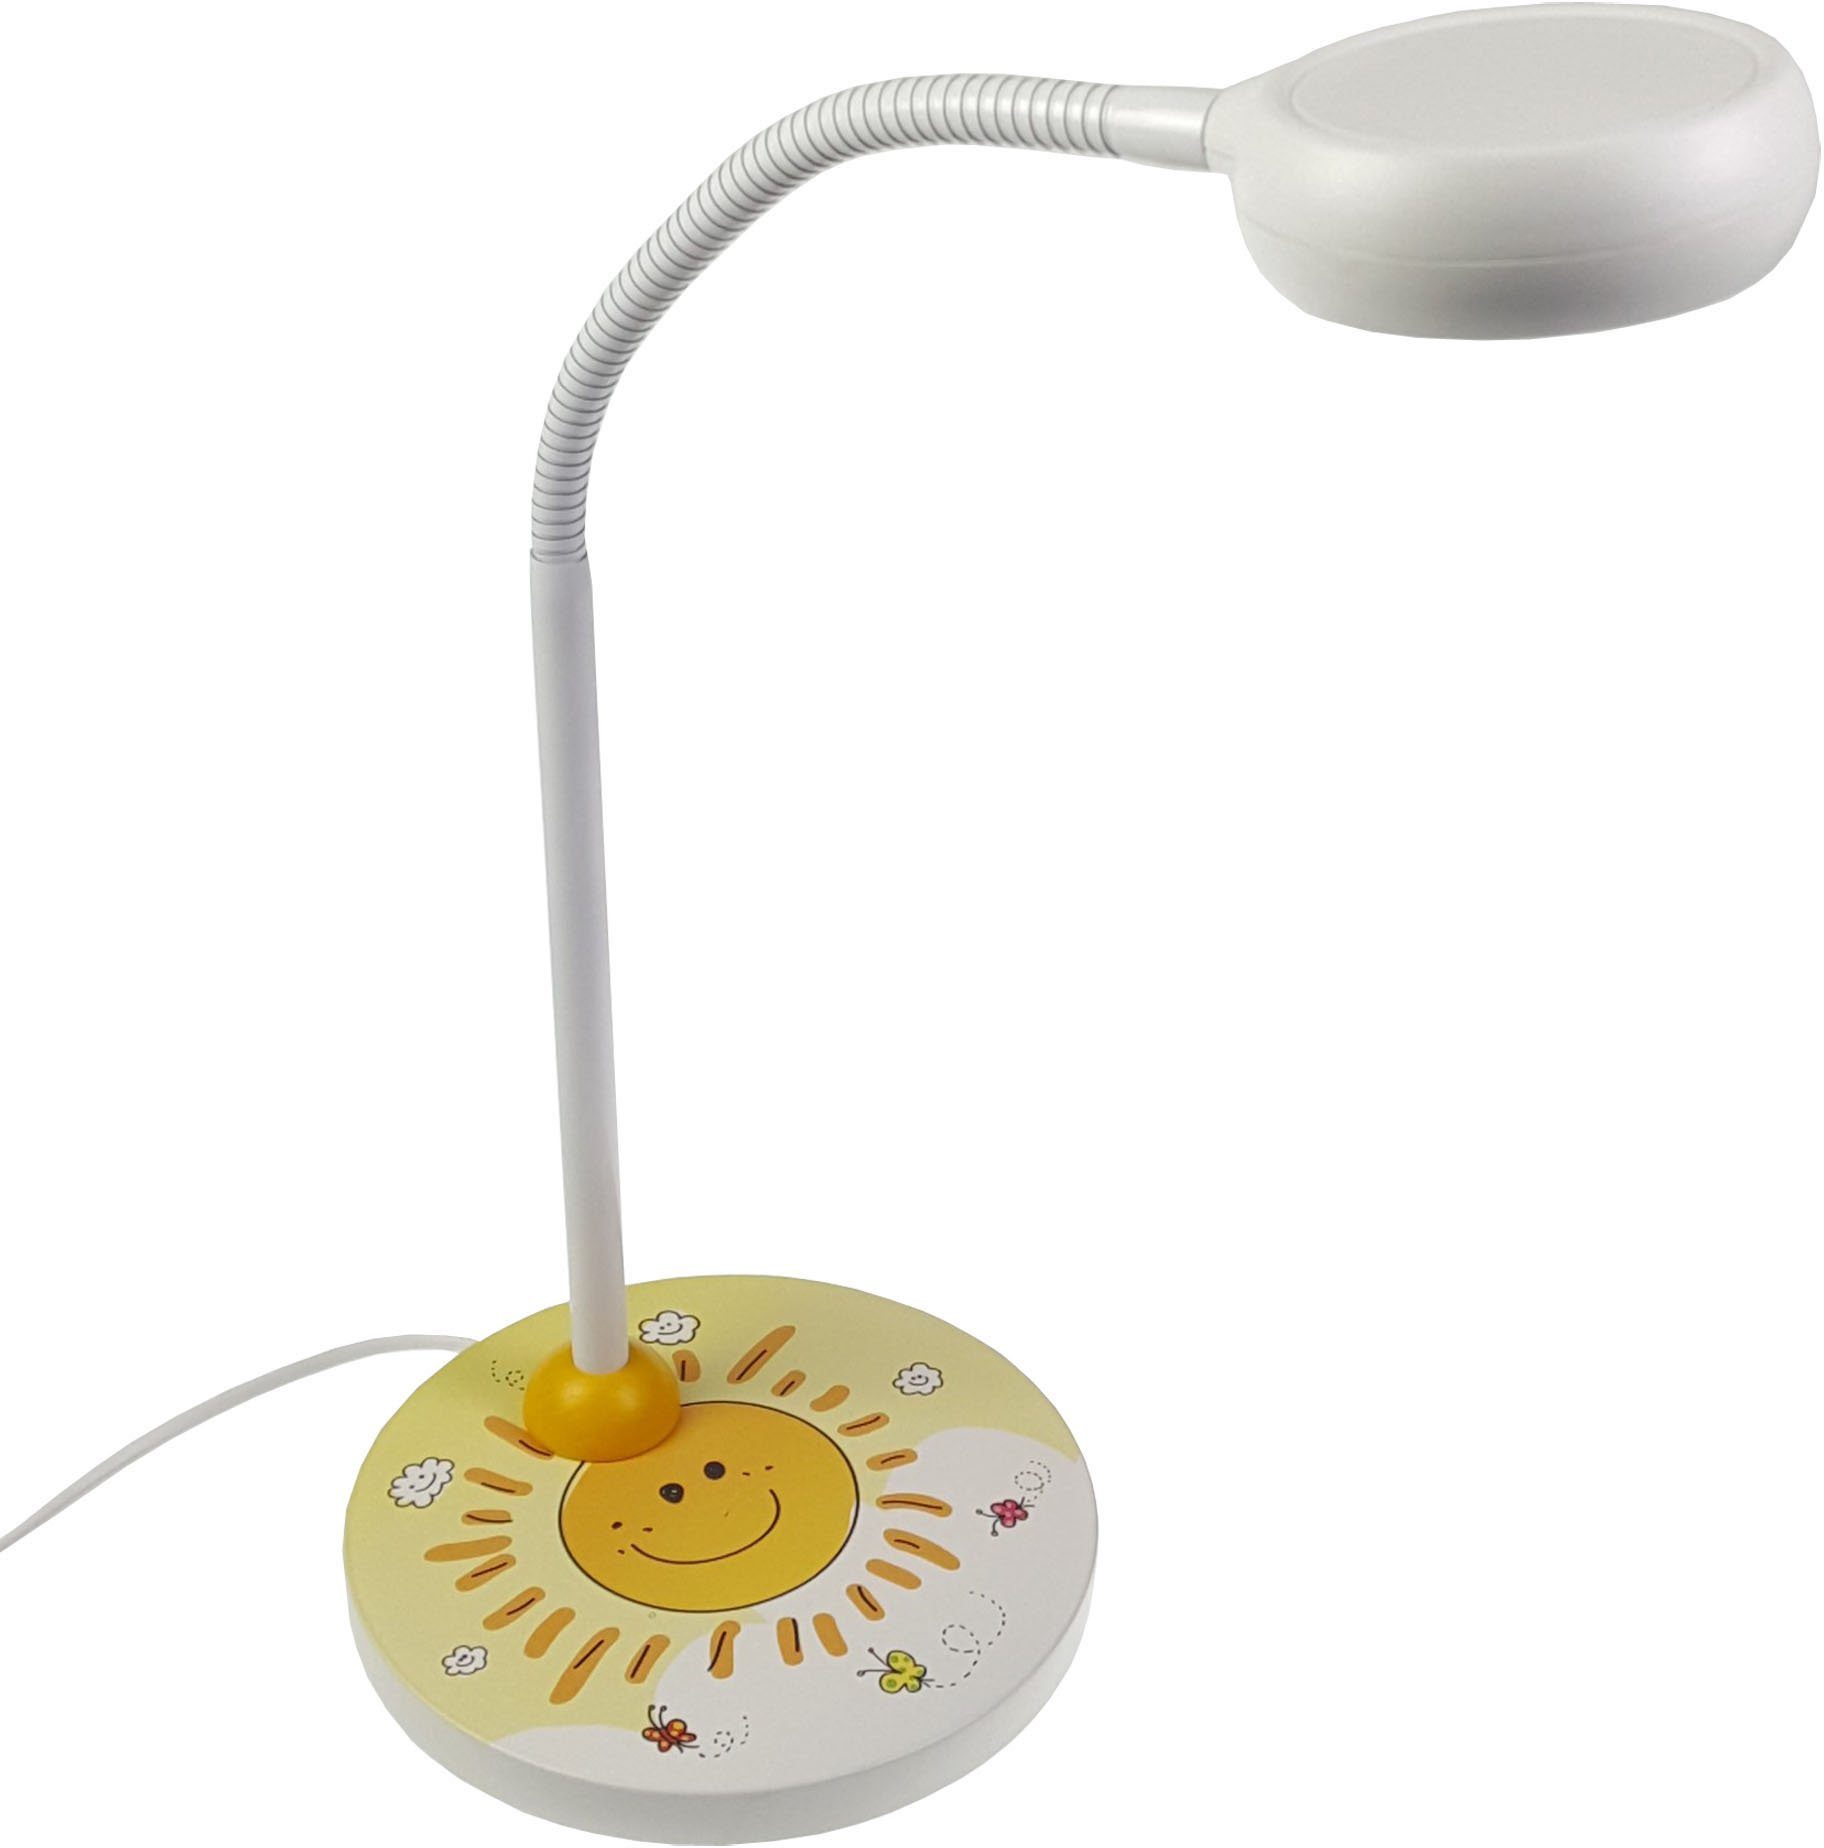 Offizielle Website für den Versandhandel niermann LED Tischleuchte Sunny, wechselbar, Sunny Tischleuchte LED